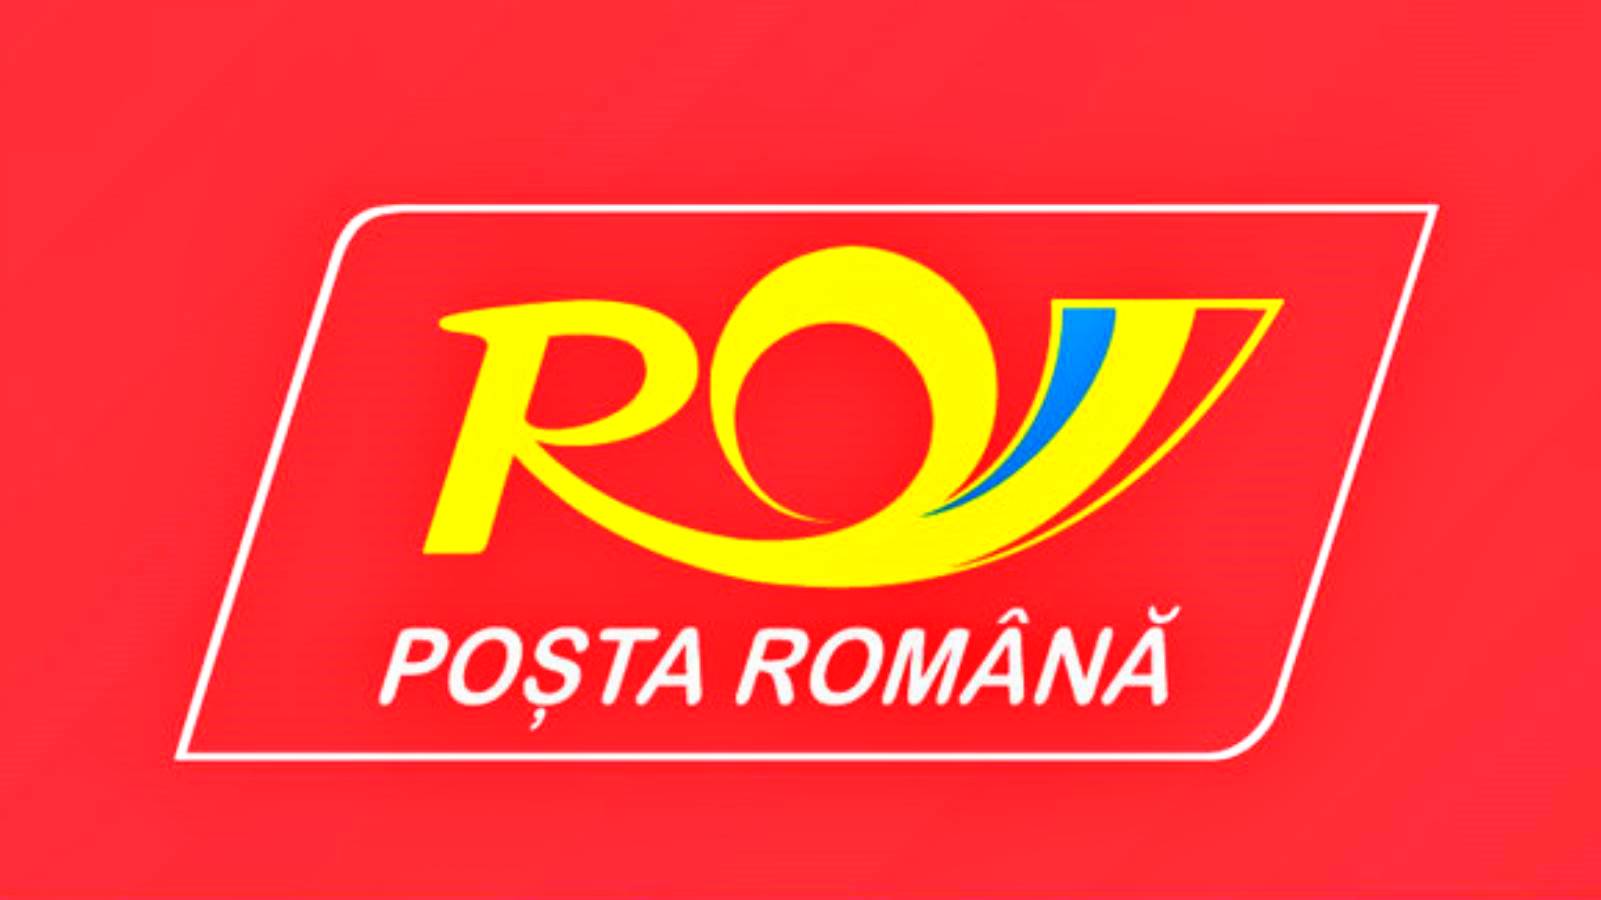 Advertencia postal rumana sobre los paquetes con Arbidol